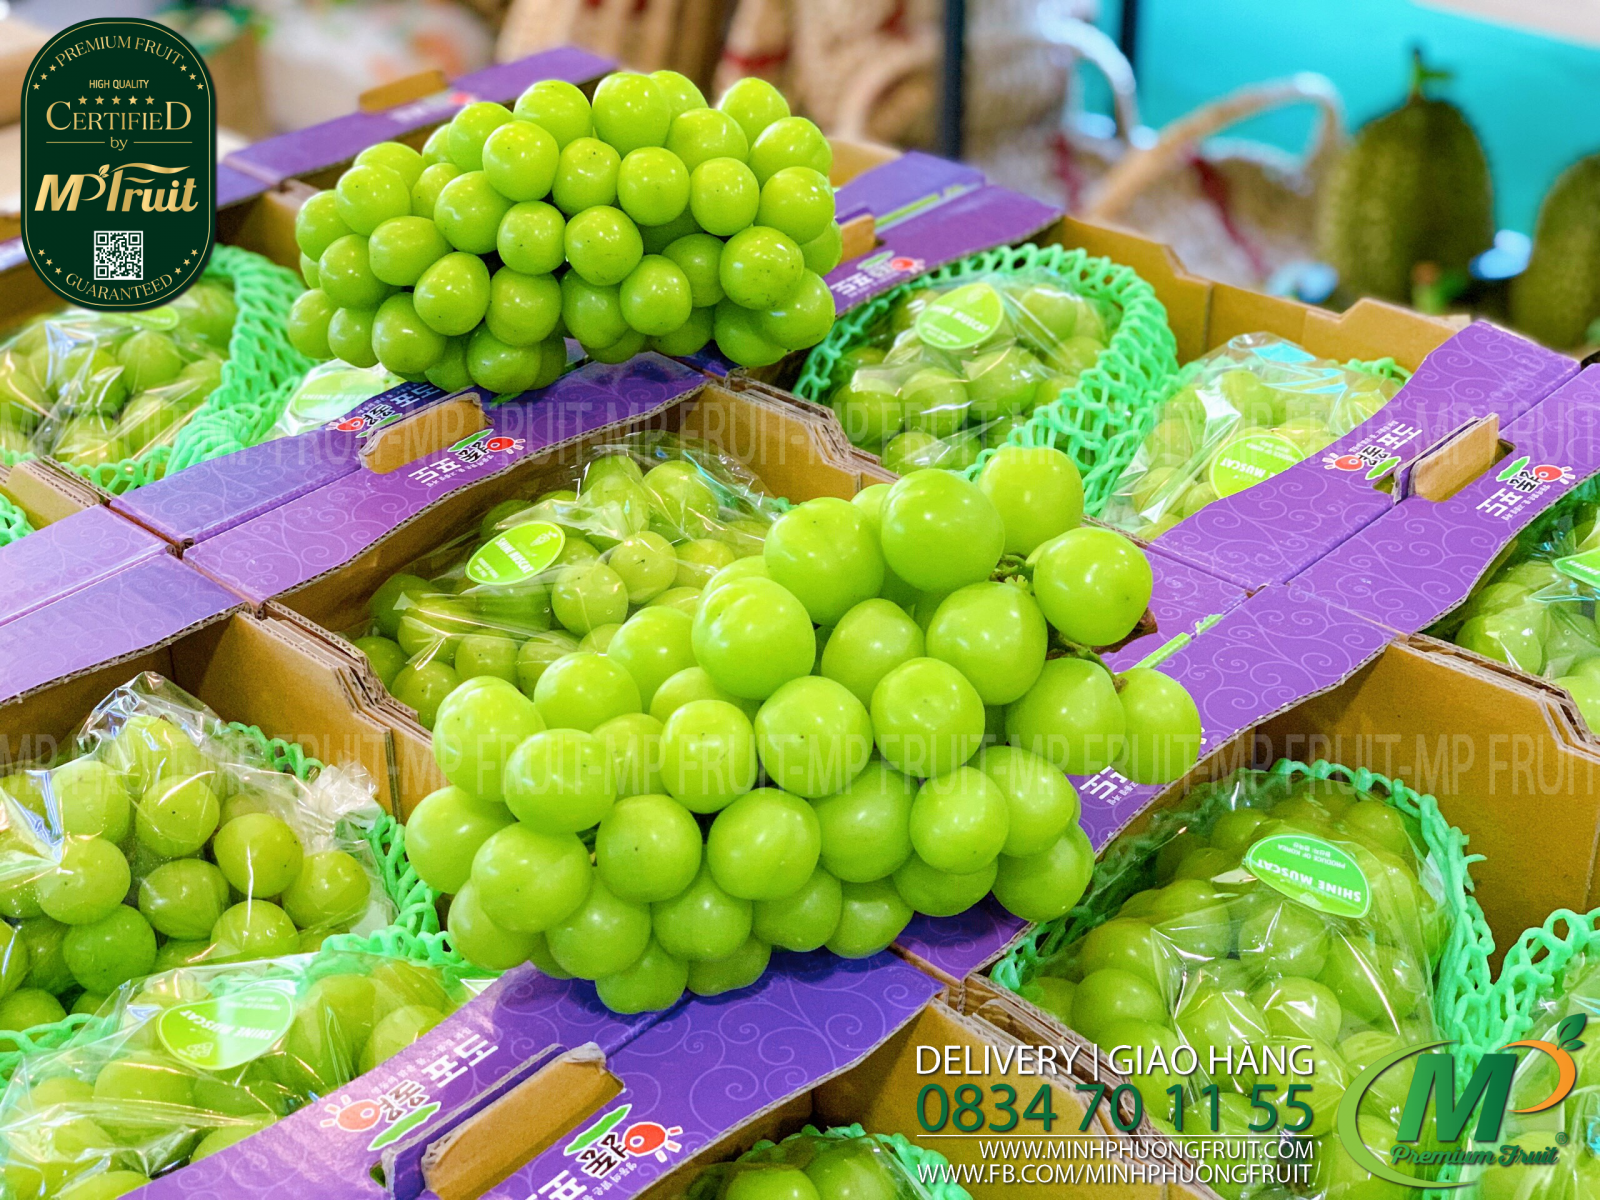 Nho Mẫu Đơn Shine Muscat Hàn Quốc tại MP Fruits